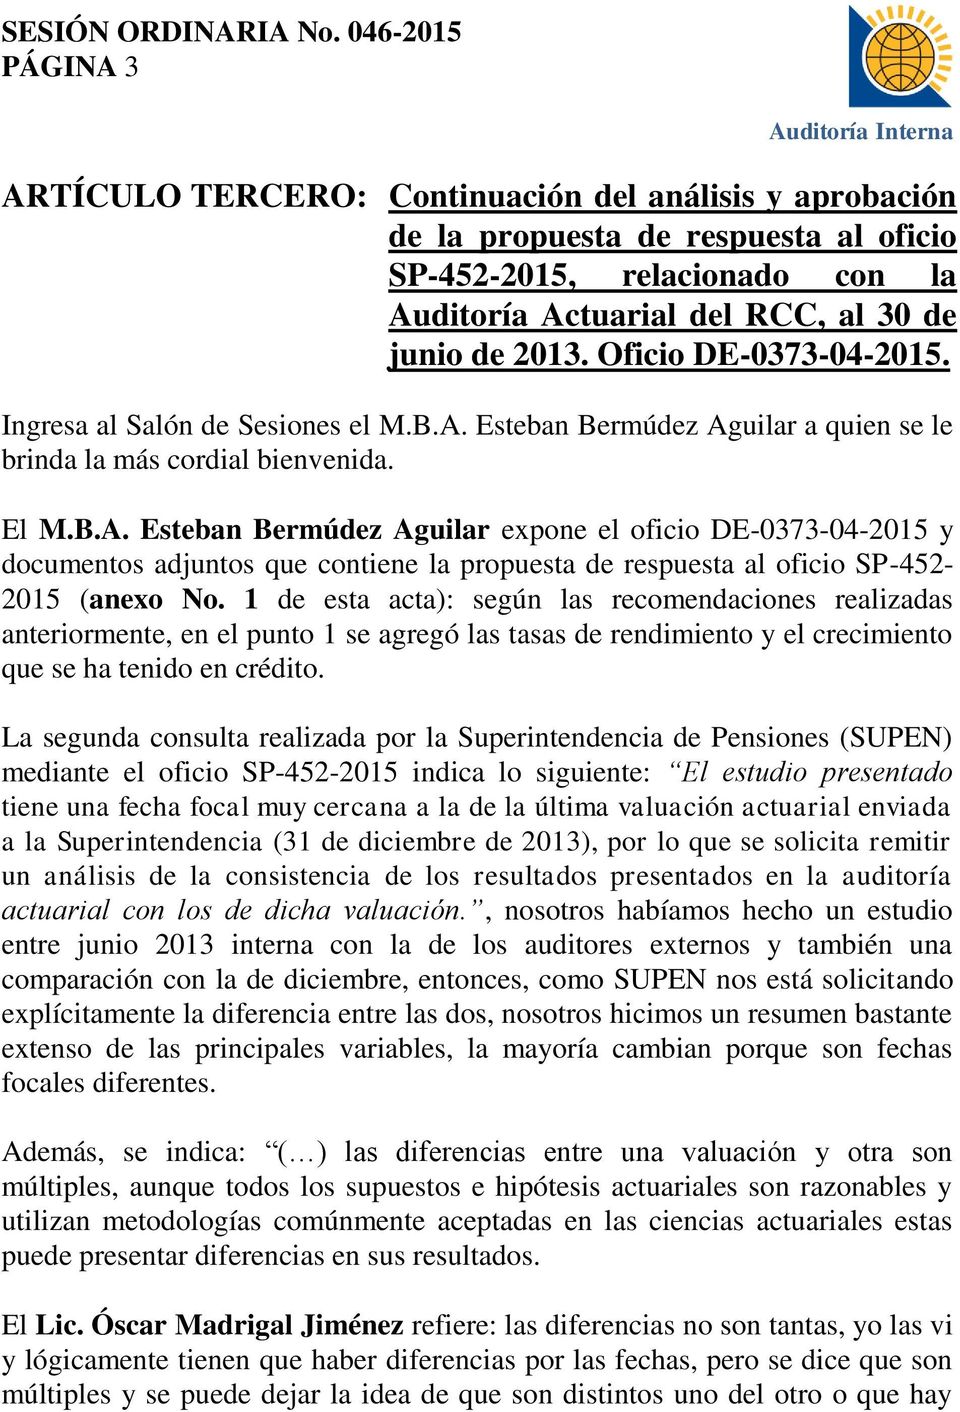 Esteban Bermúdez Aguilar a quien se le brinda la más cordial bienvenida. El M.B.A. Esteban Bermúdez Aguilar expone el oficio DE-0373-04-2015 y documentos adjuntos que contiene la propuesta de respuesta al oficio SP-452-2015 (anexo No.